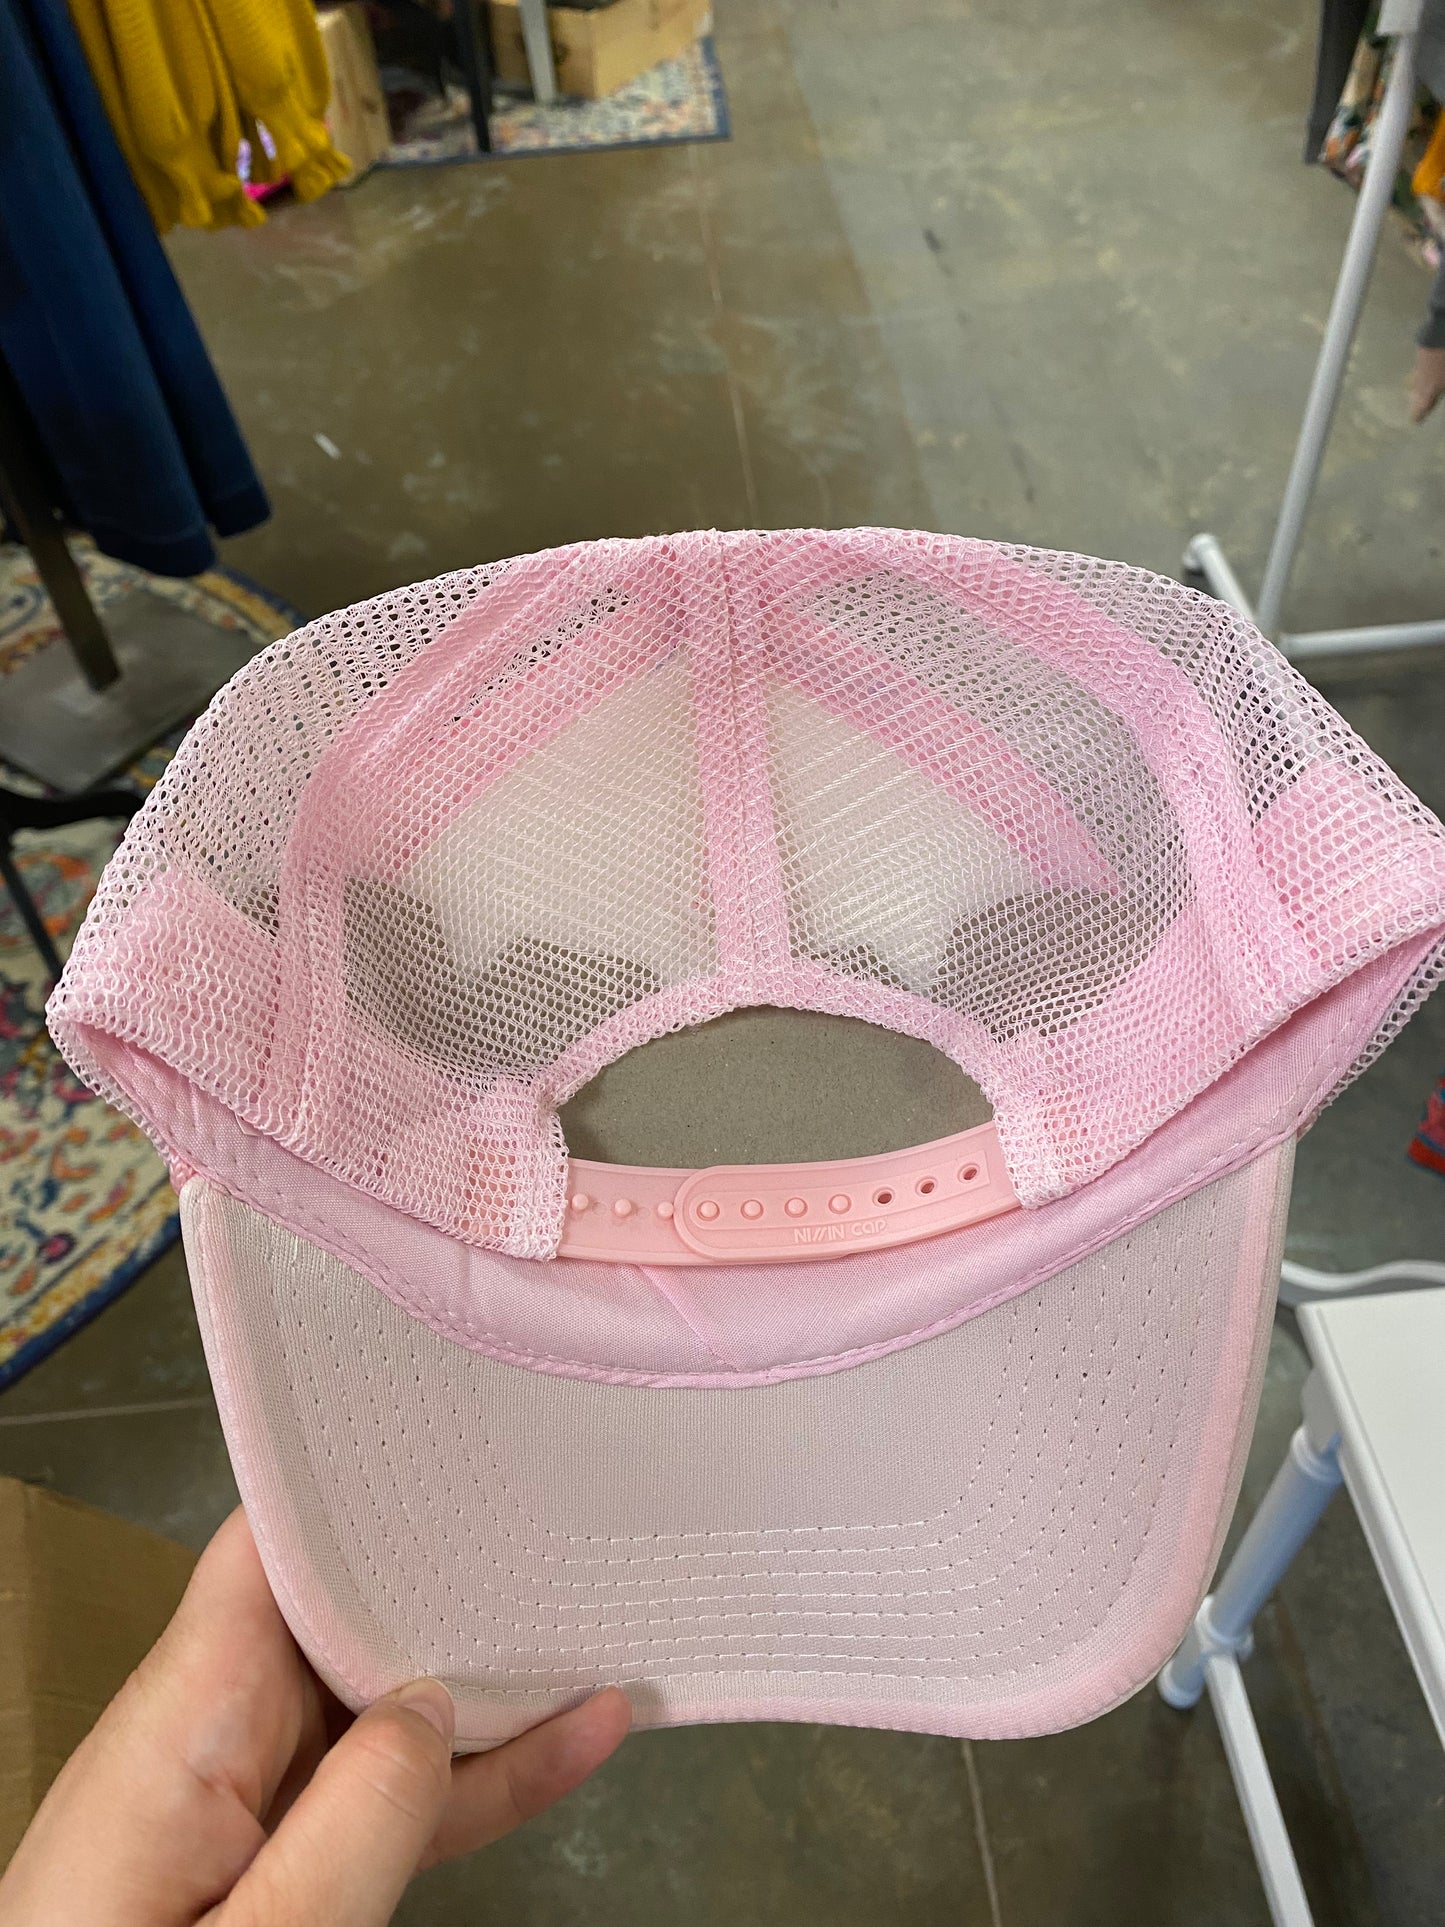 Blush pink smiley hat